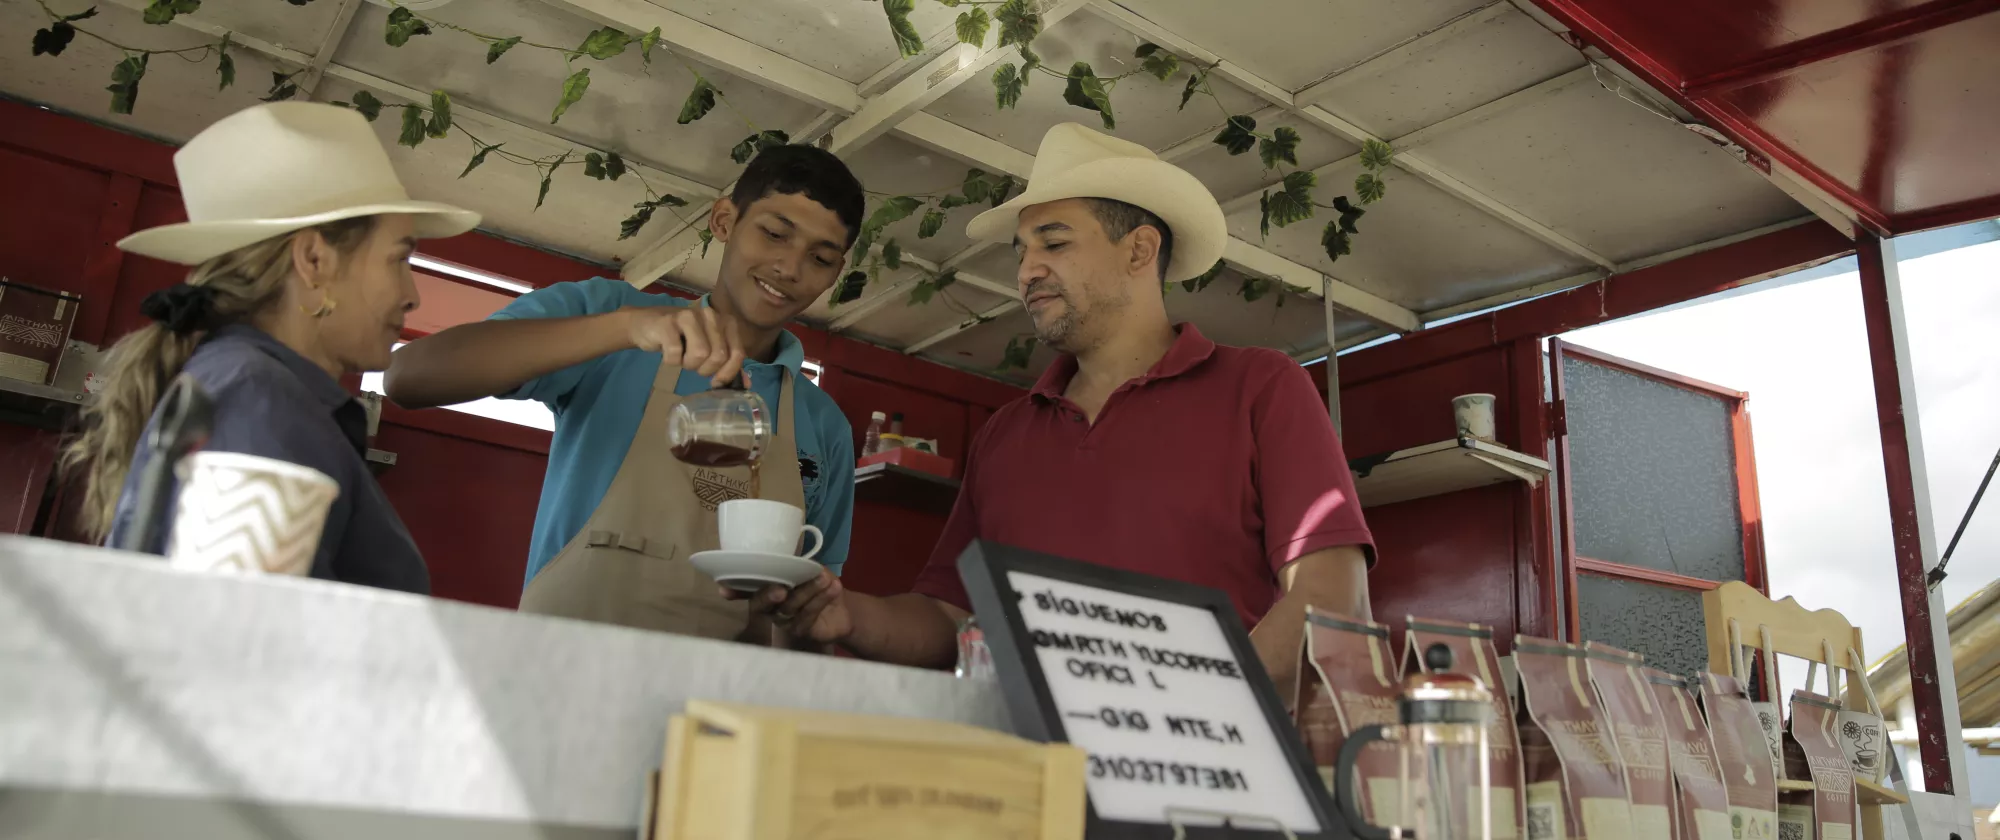 El 85% de la producción del café en Colombia se encuentra en la informalidad